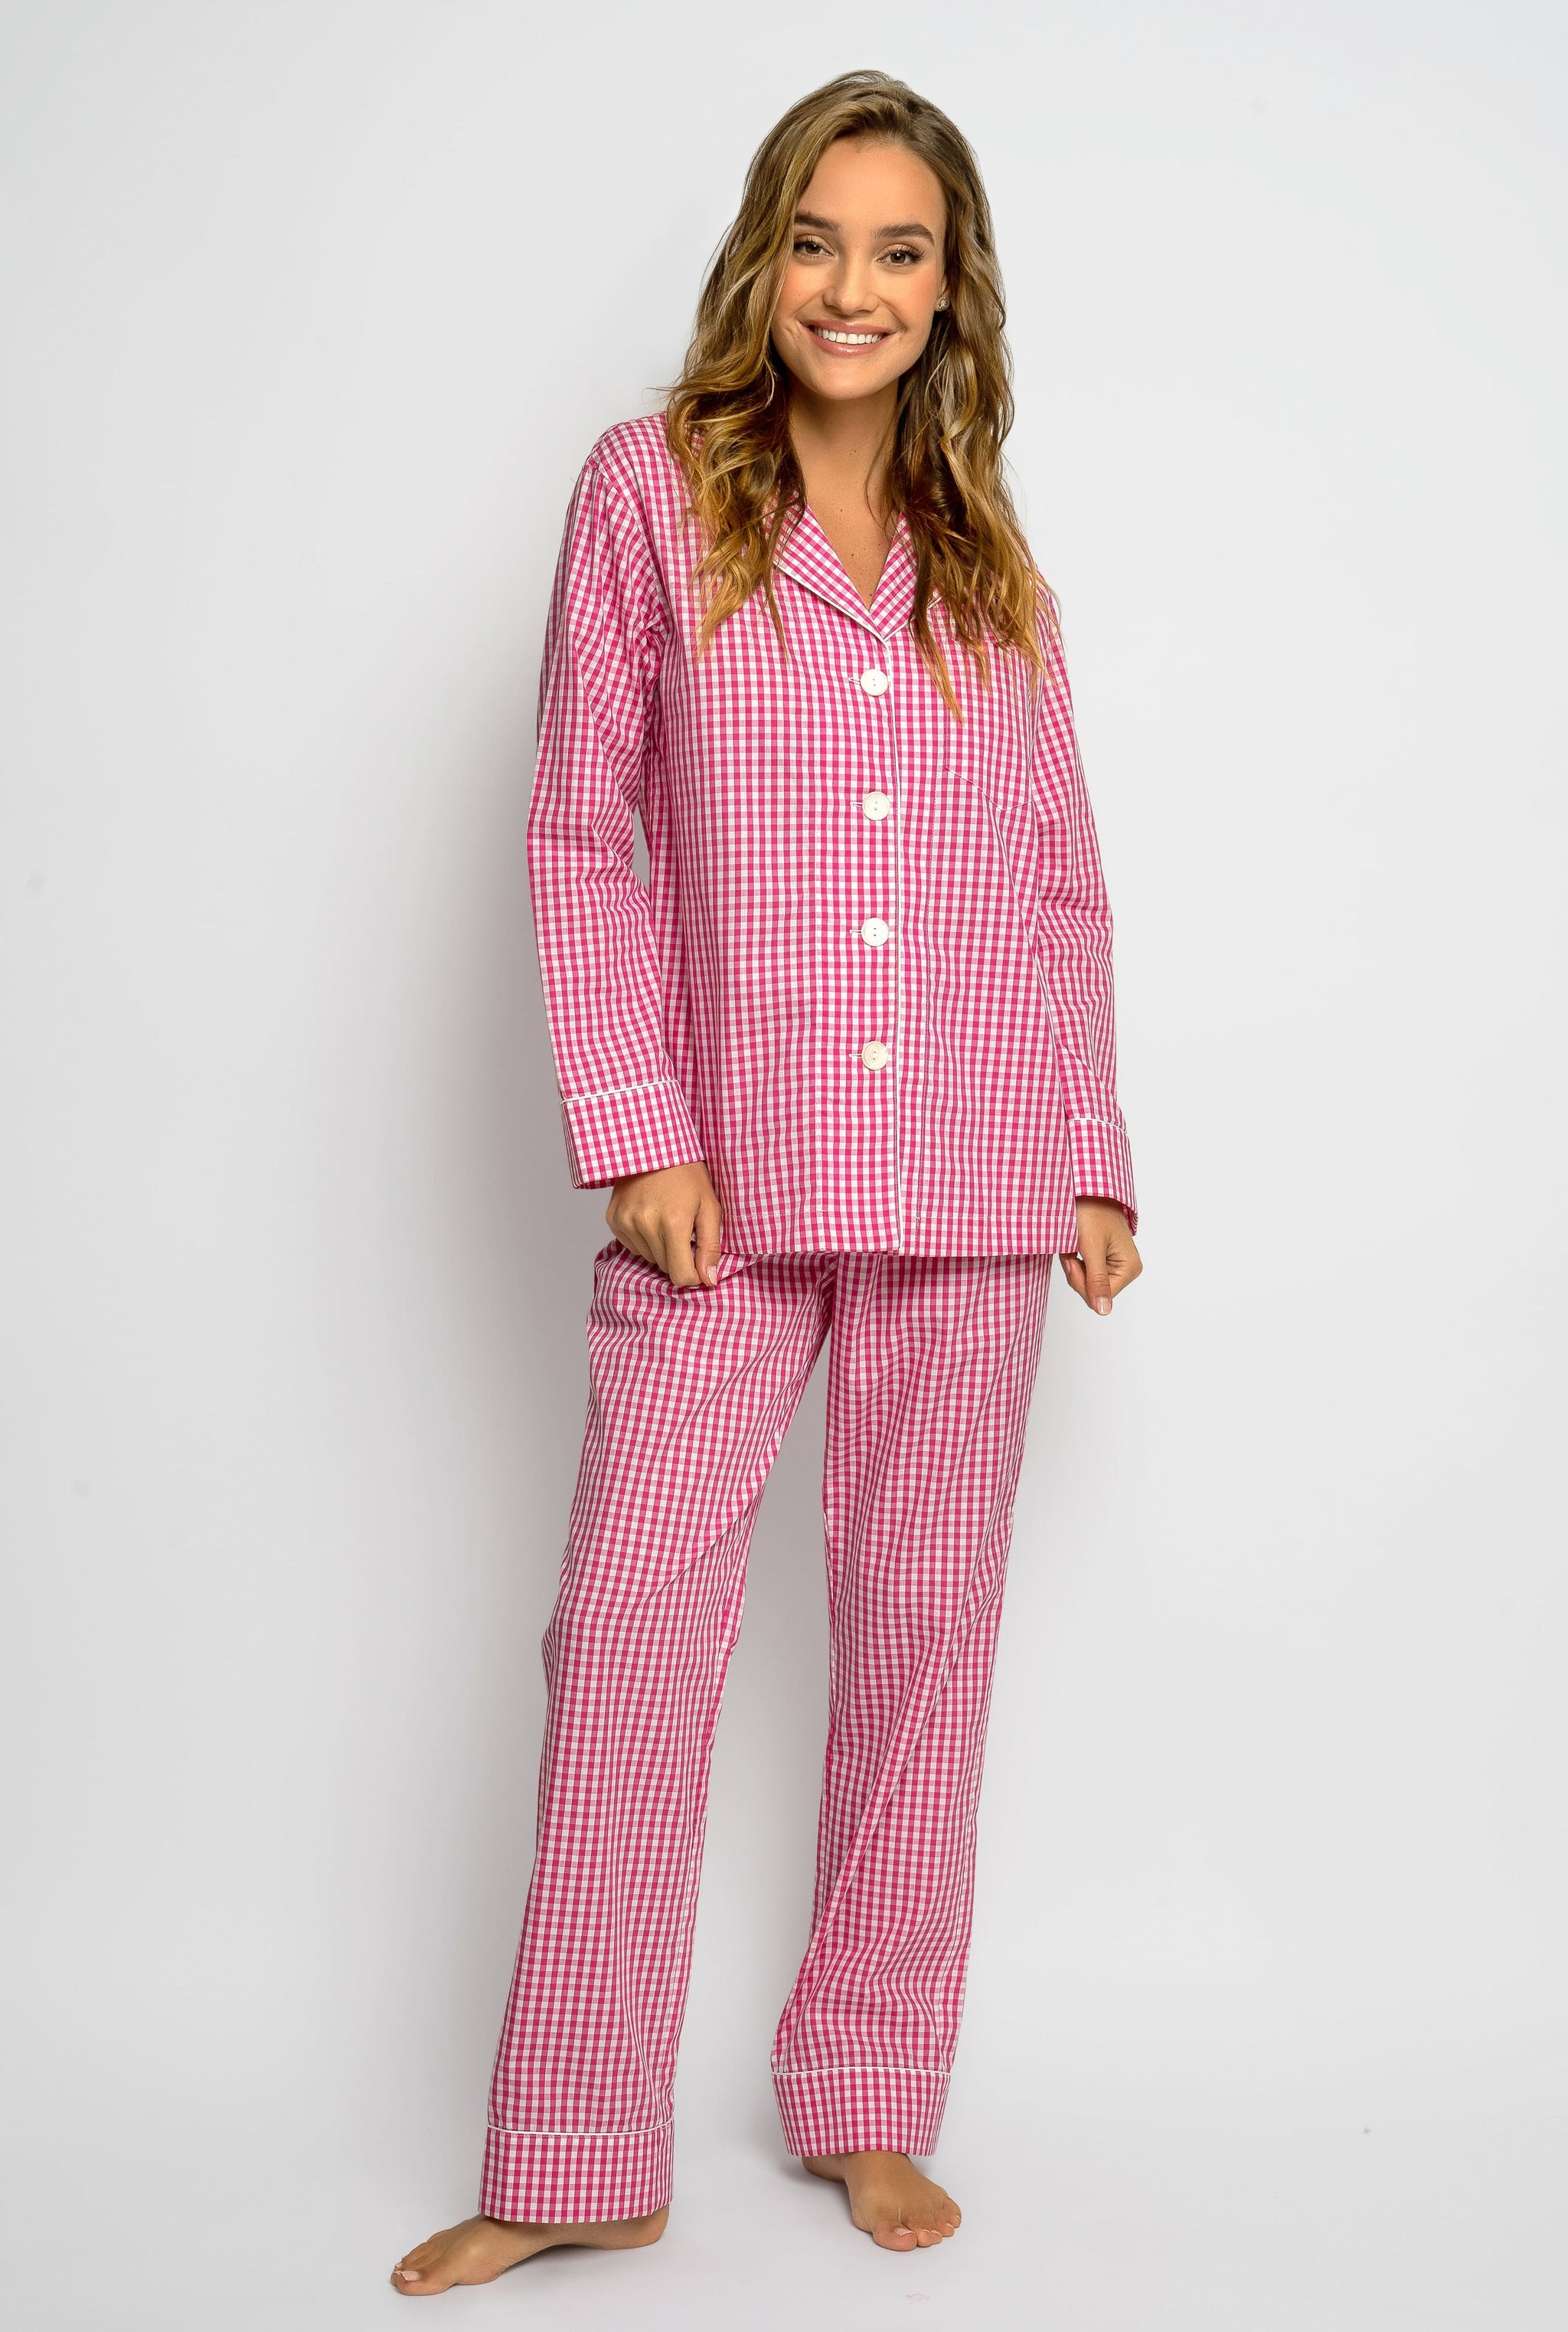 Lightweight Pajamas Womens on Sale